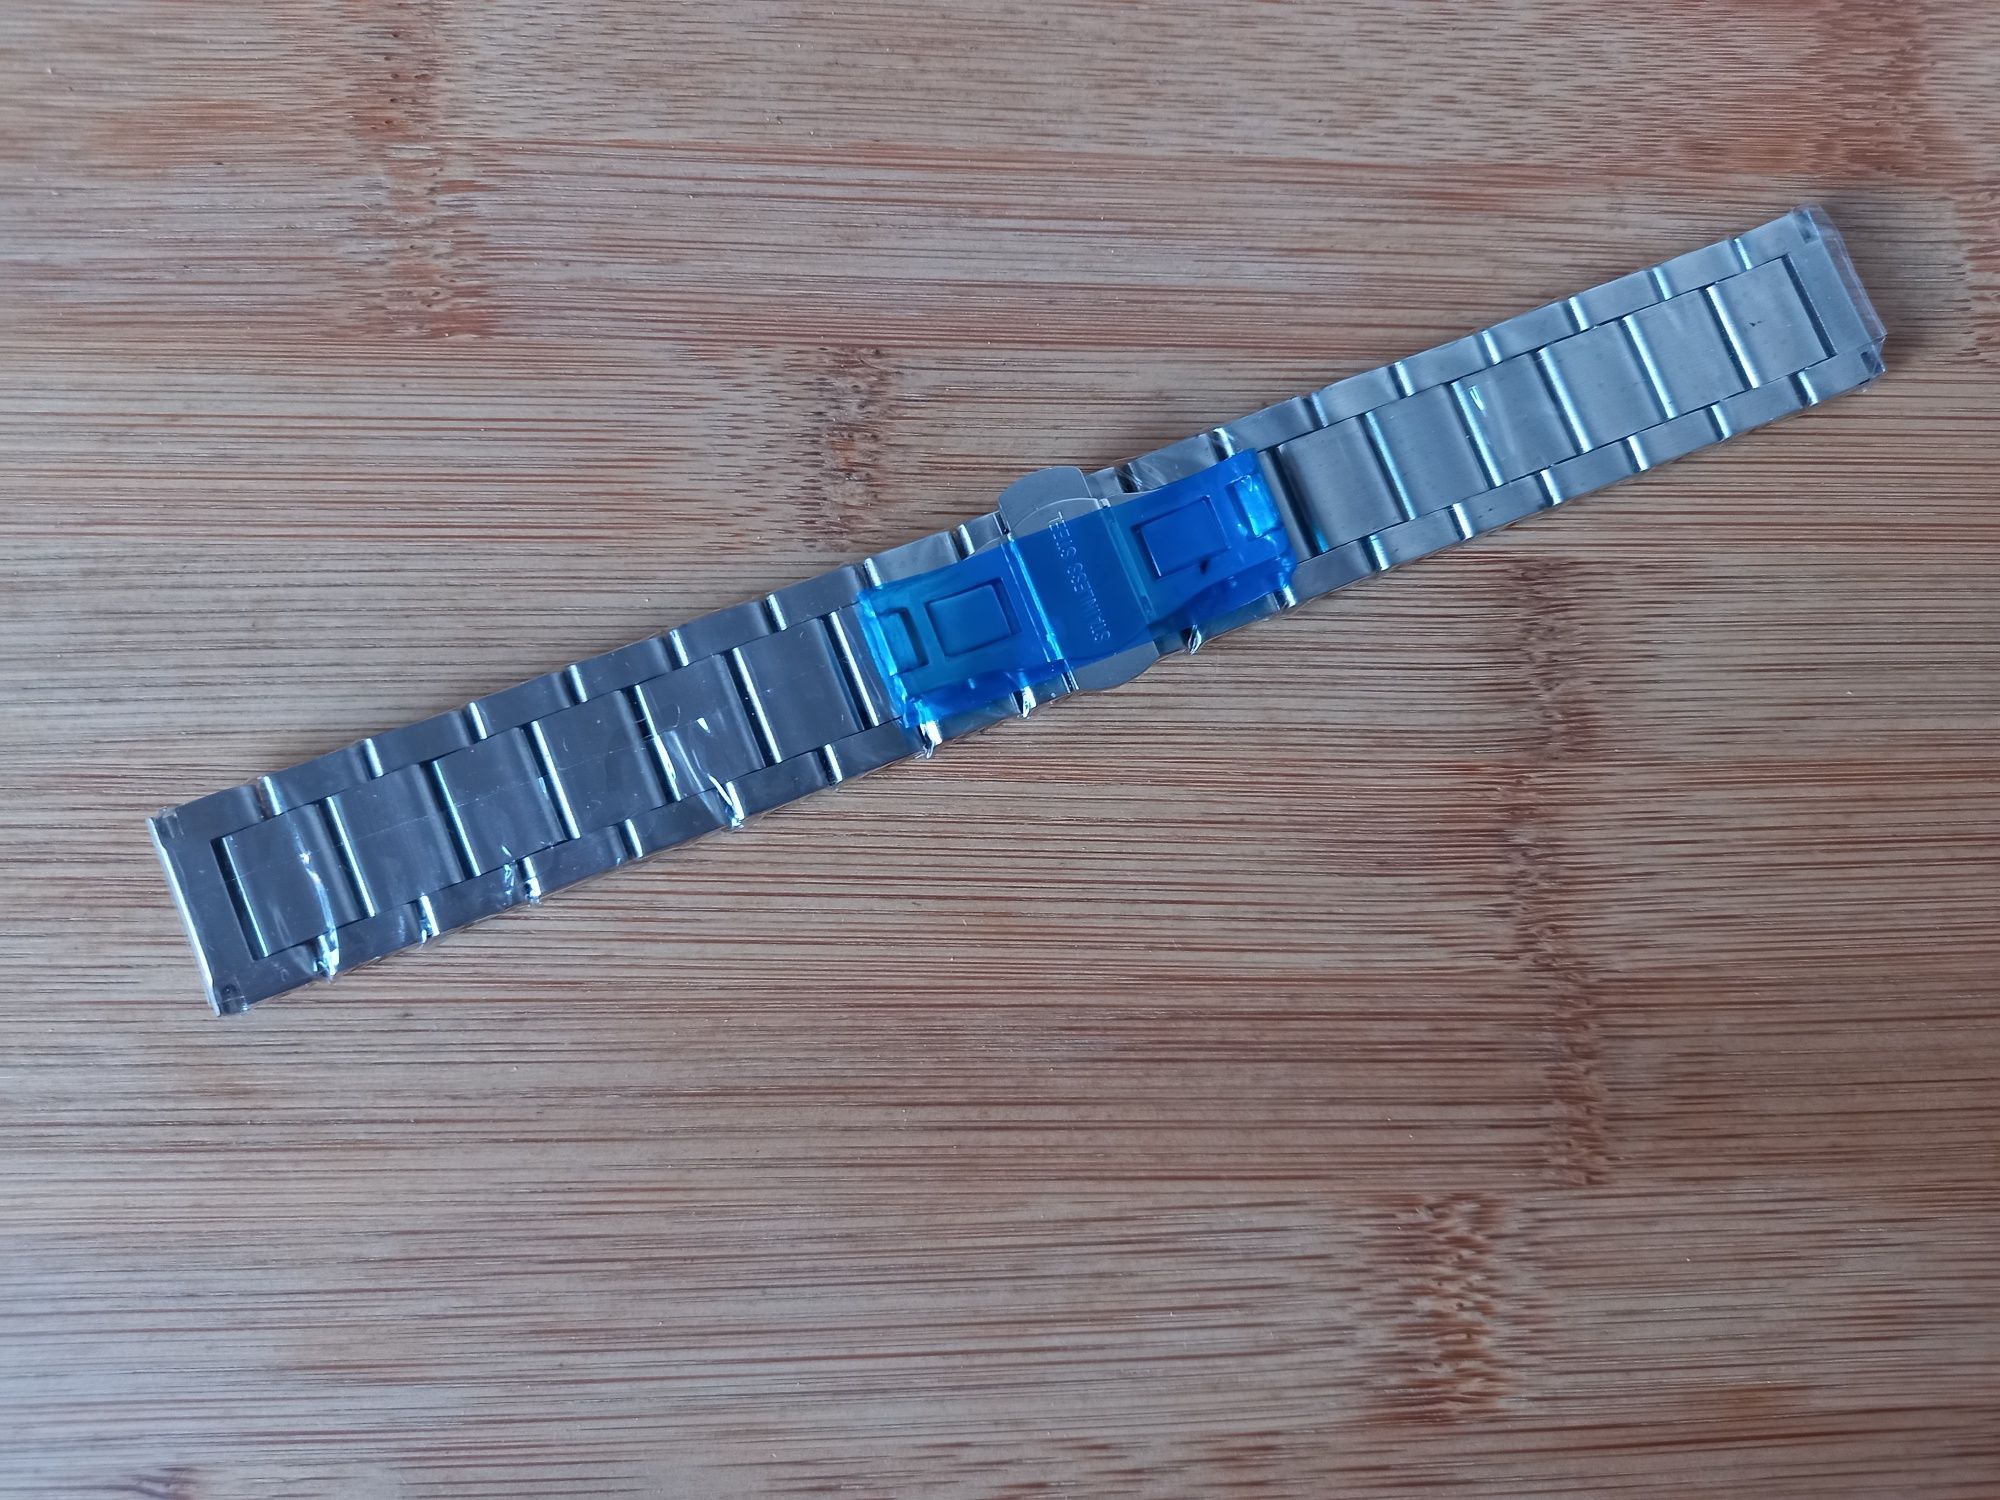 Bracelete relógio em aço 22 mm